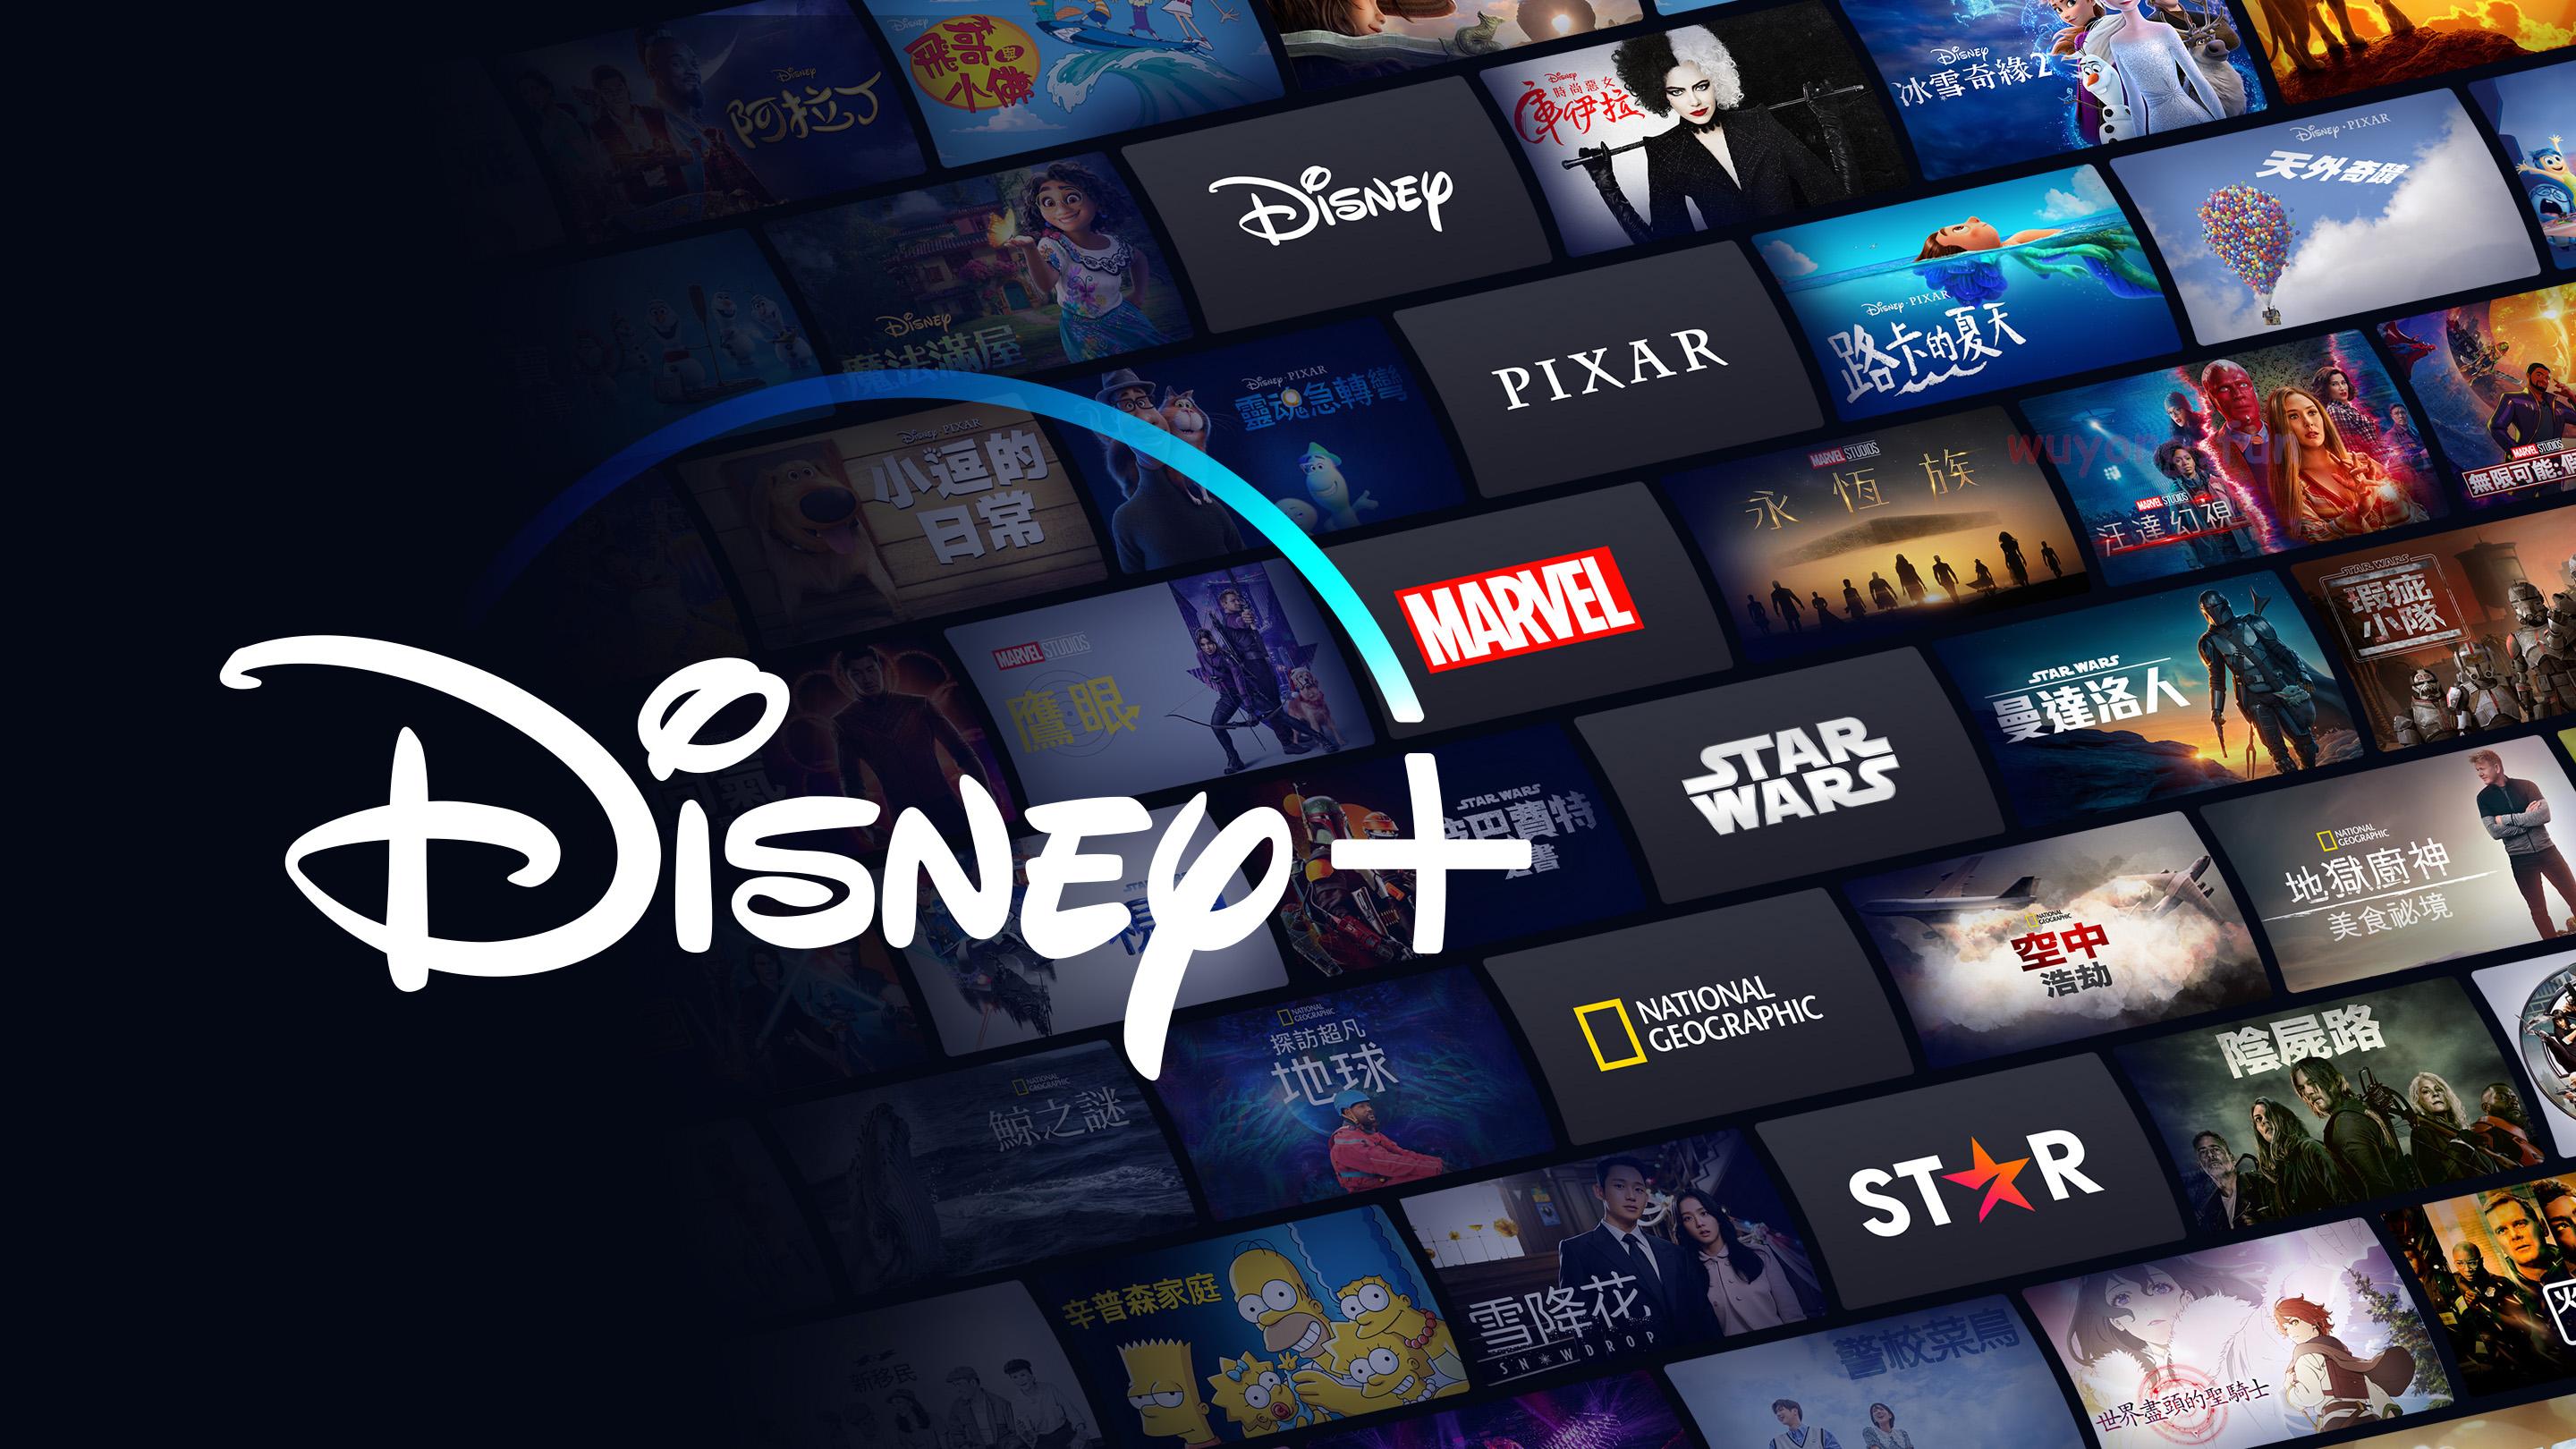 迪士尼 Disney+ 免费600+数据会员账号